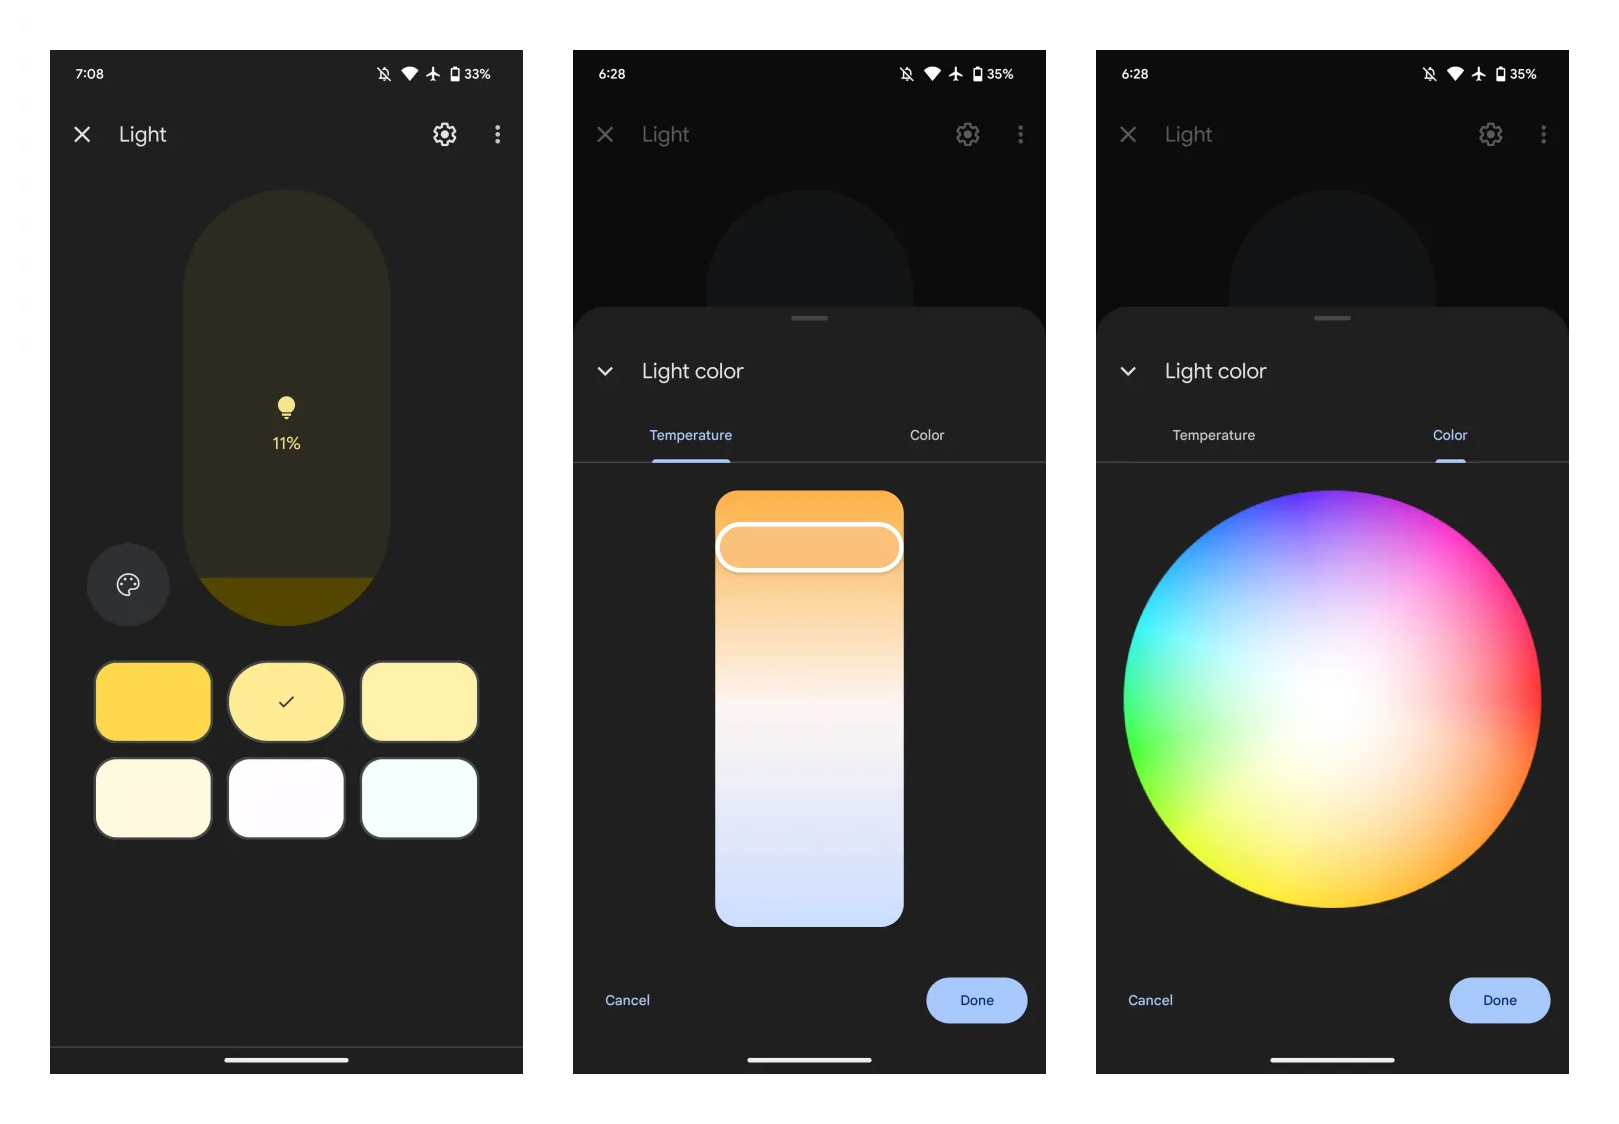 Google Home redesigned lights slider and color wheel